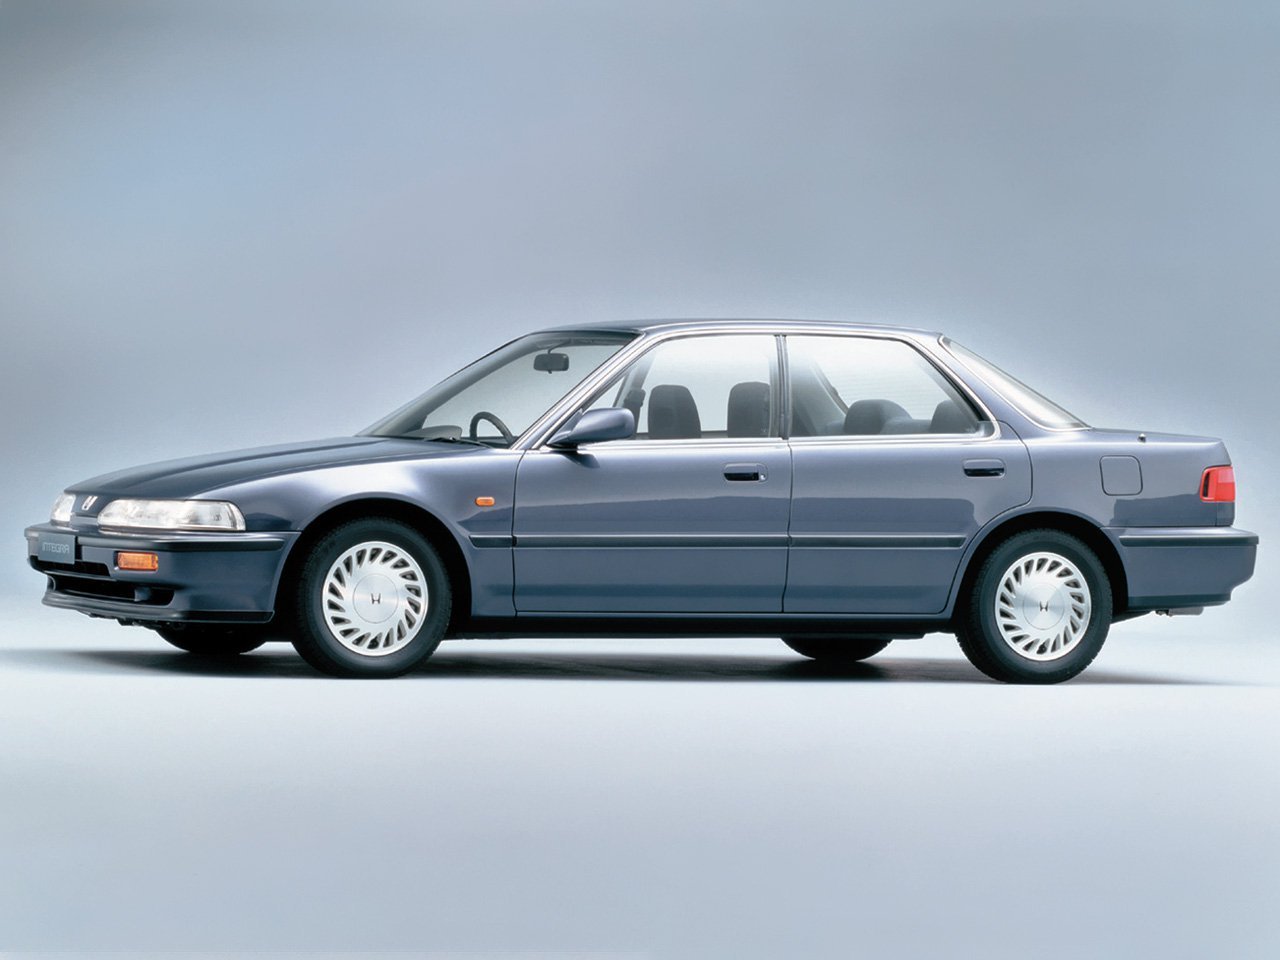 седан Honda Integra 1989 - 1993г выпуска модификация 1.6 AT (105 л.с.)